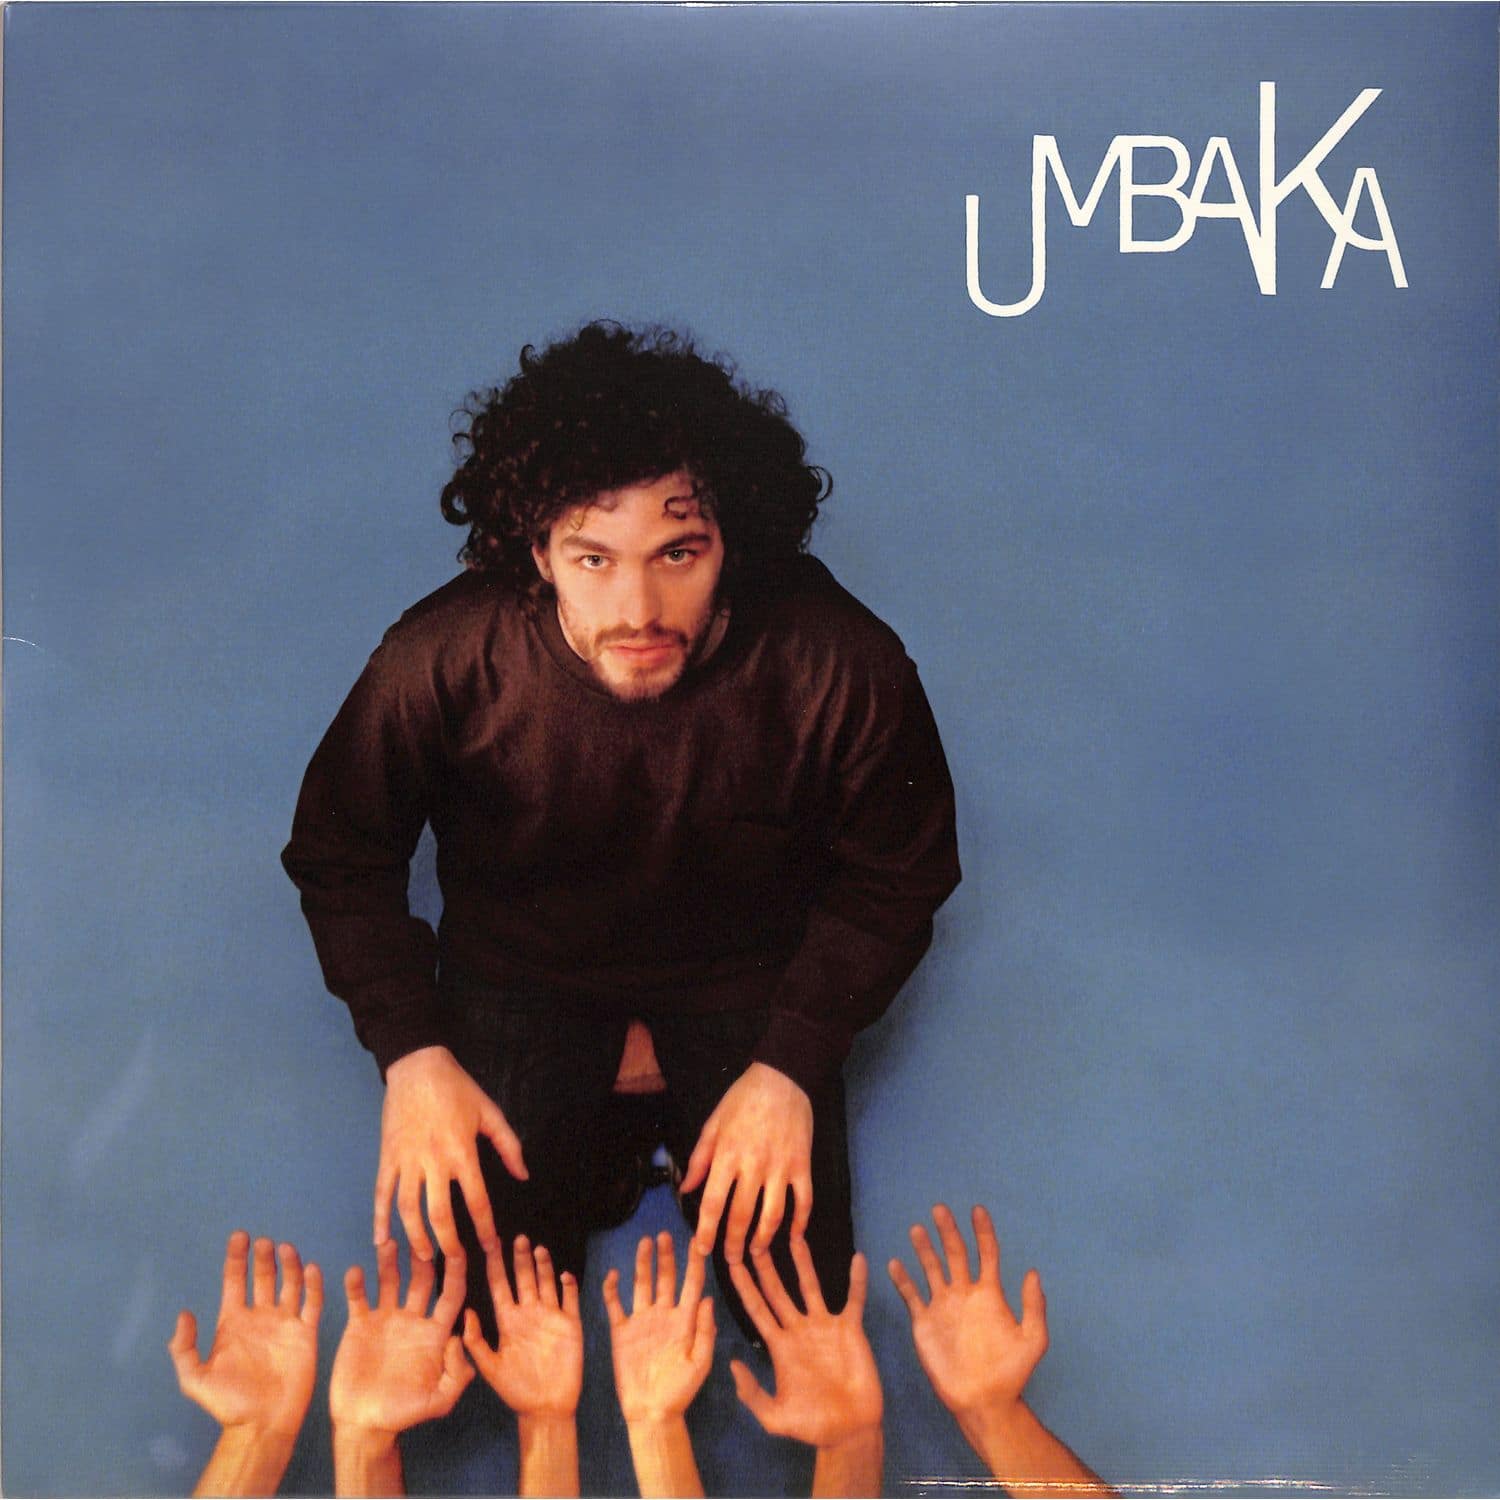 Thomas Umbaca - UMBAKA 